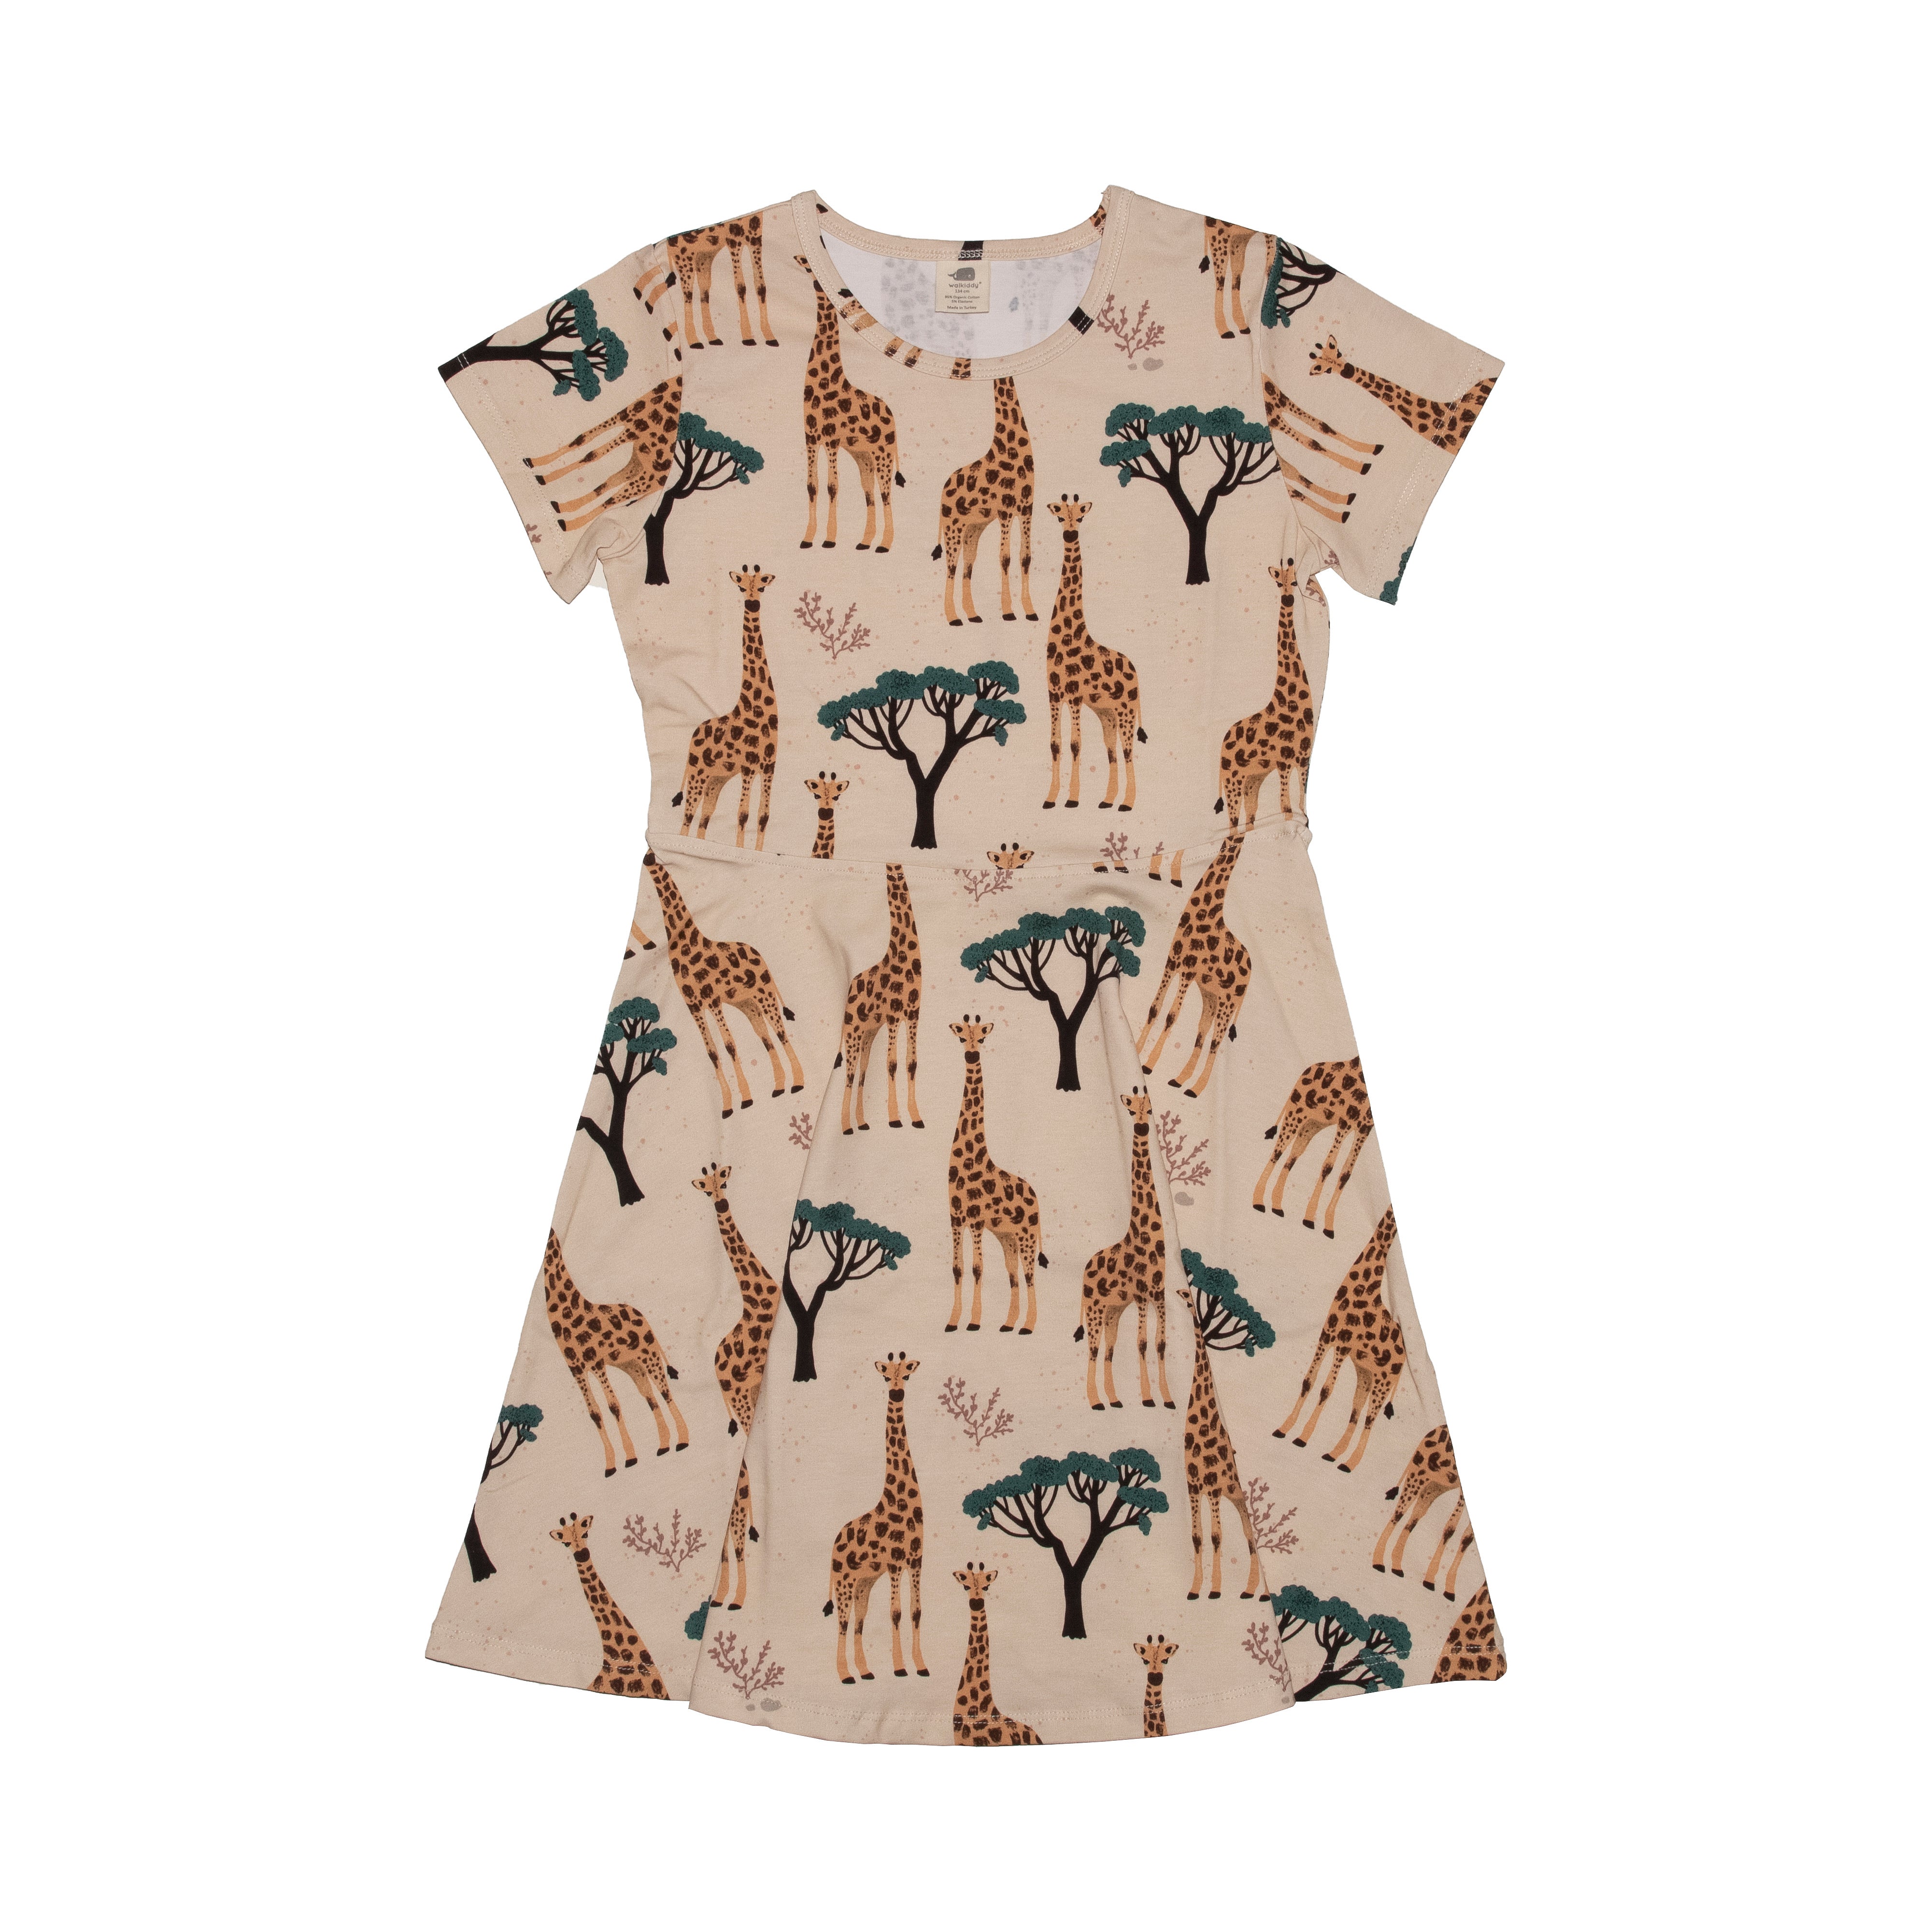 Walkiddy Dress Giraffes